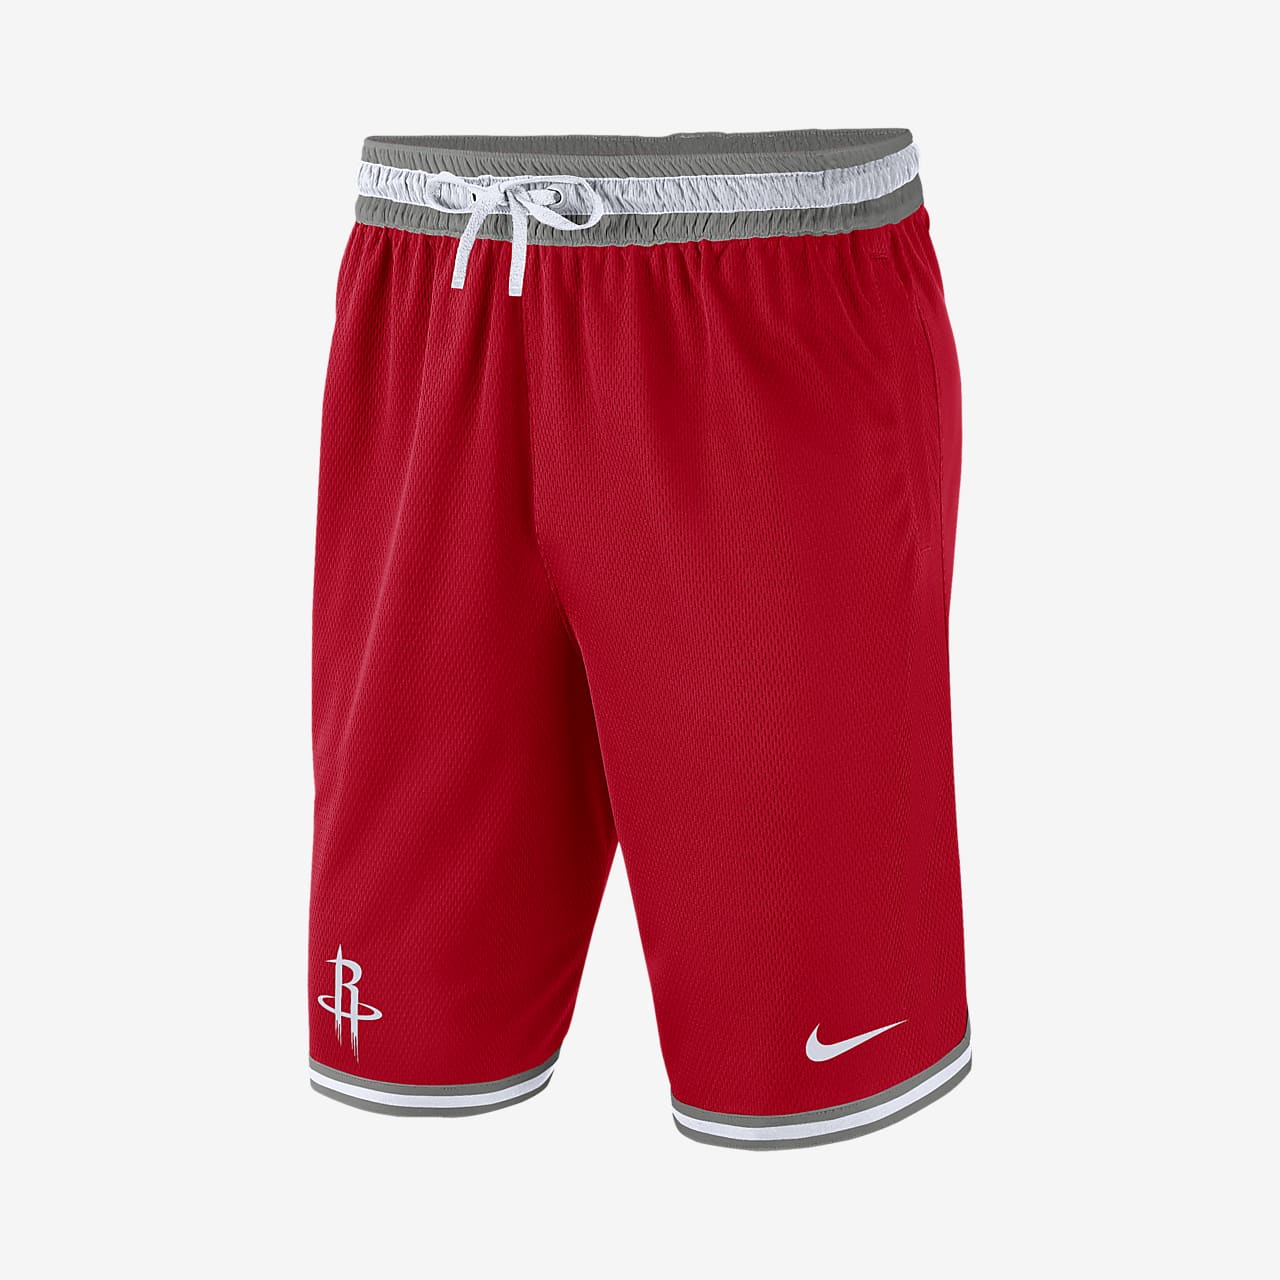 Houston Rockets DNA Nike NBA-Shorts für 